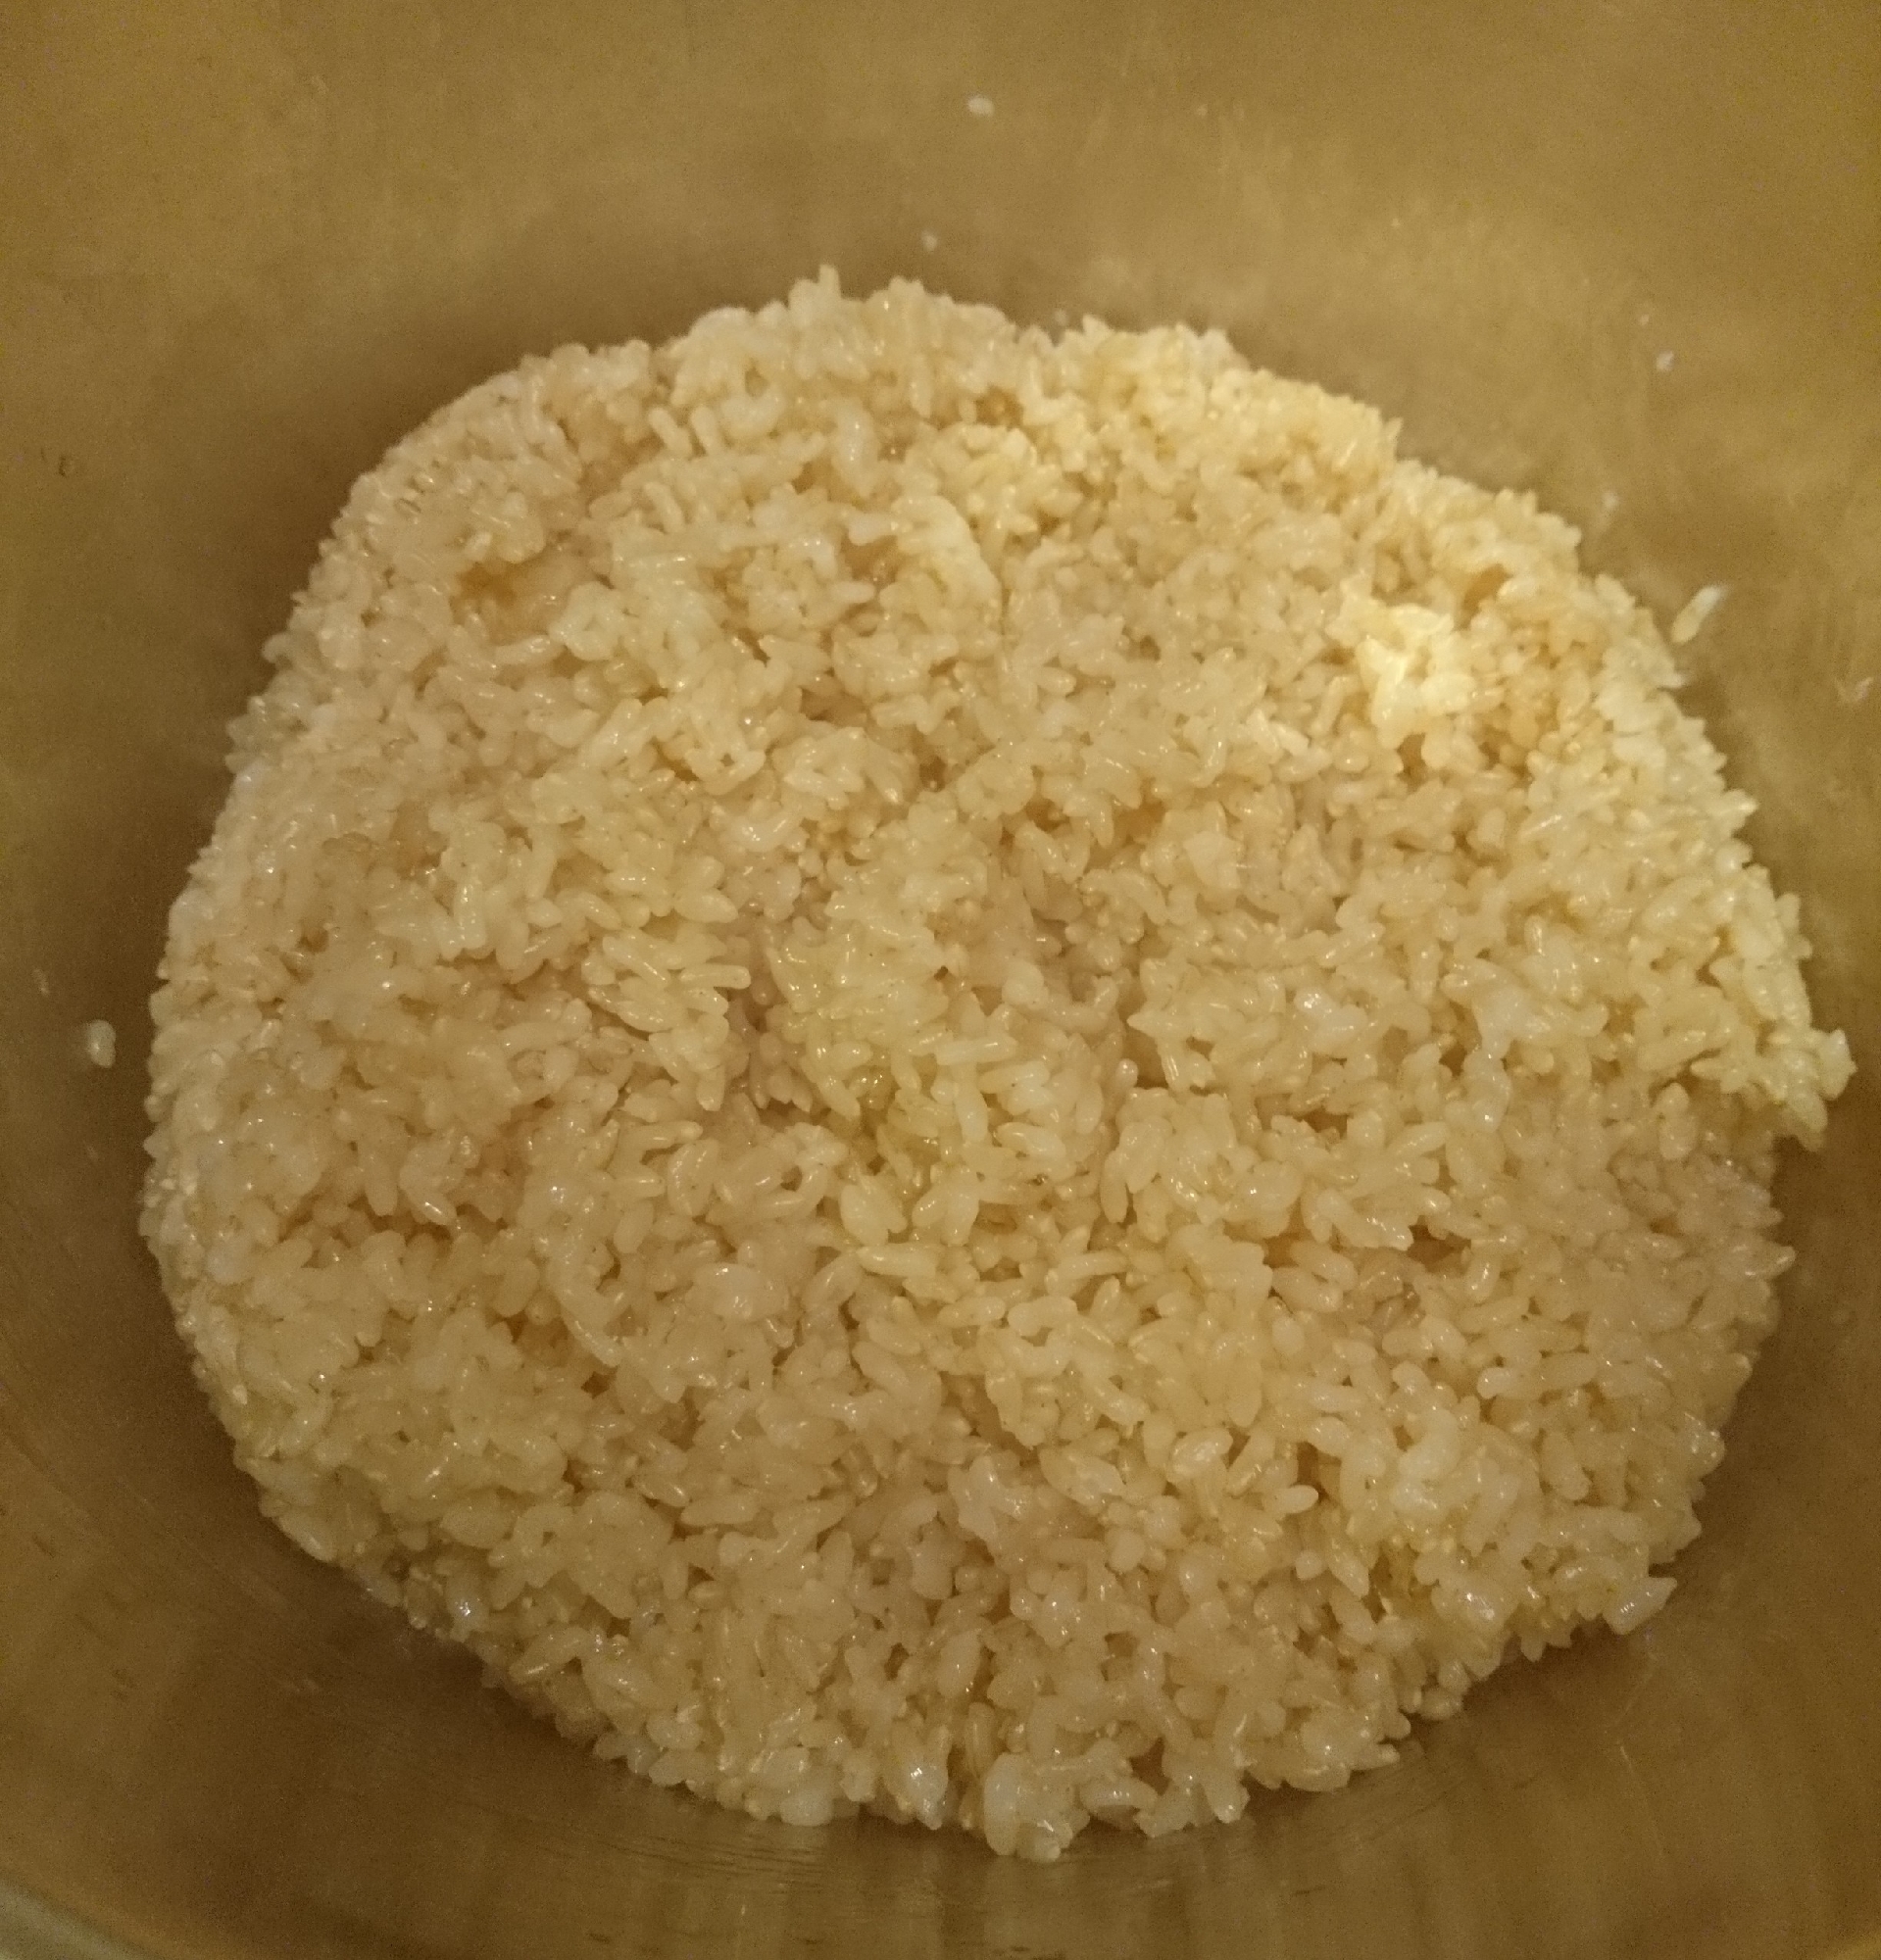 美味しい玄米の炊き方(圧力鍋)